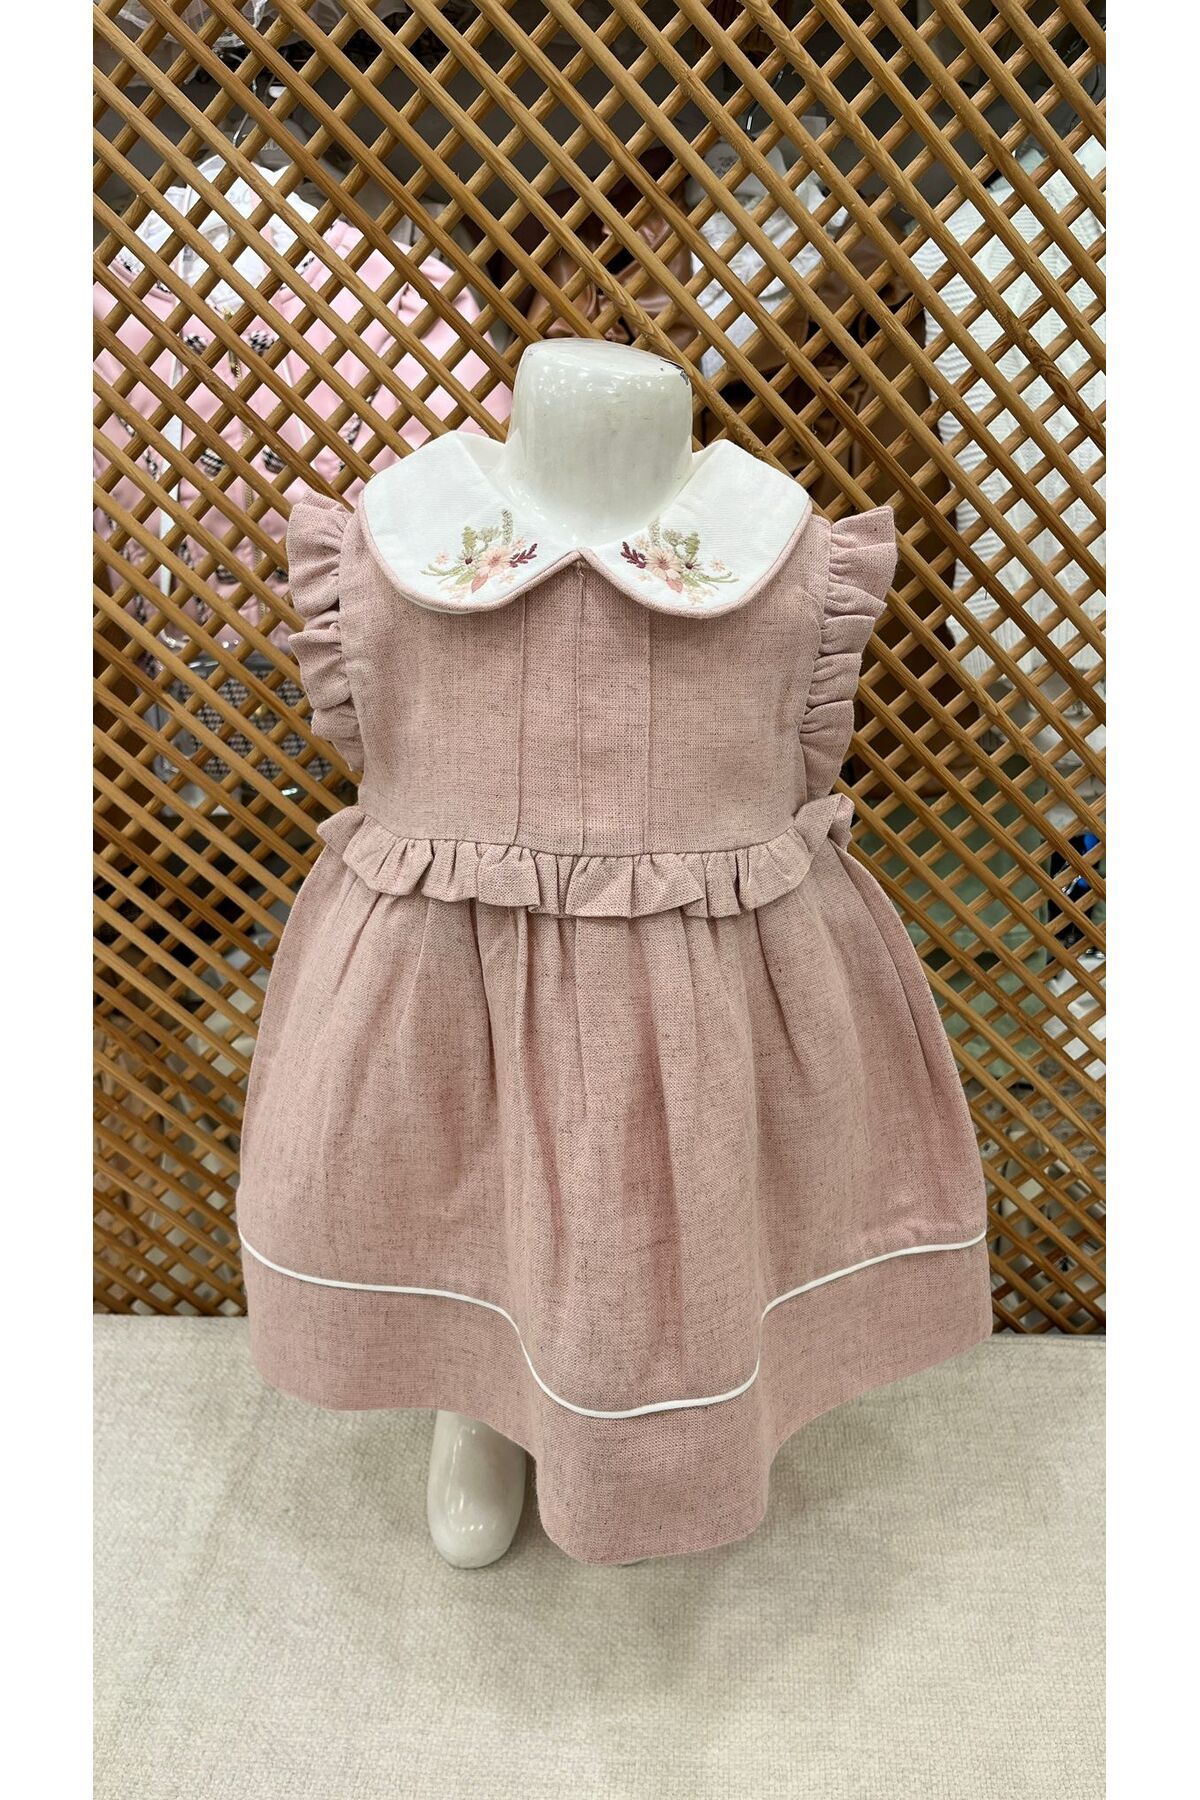 PARK BEBE Miomini kız bebek bebe yaka çiçek işleme desenli keten elbise